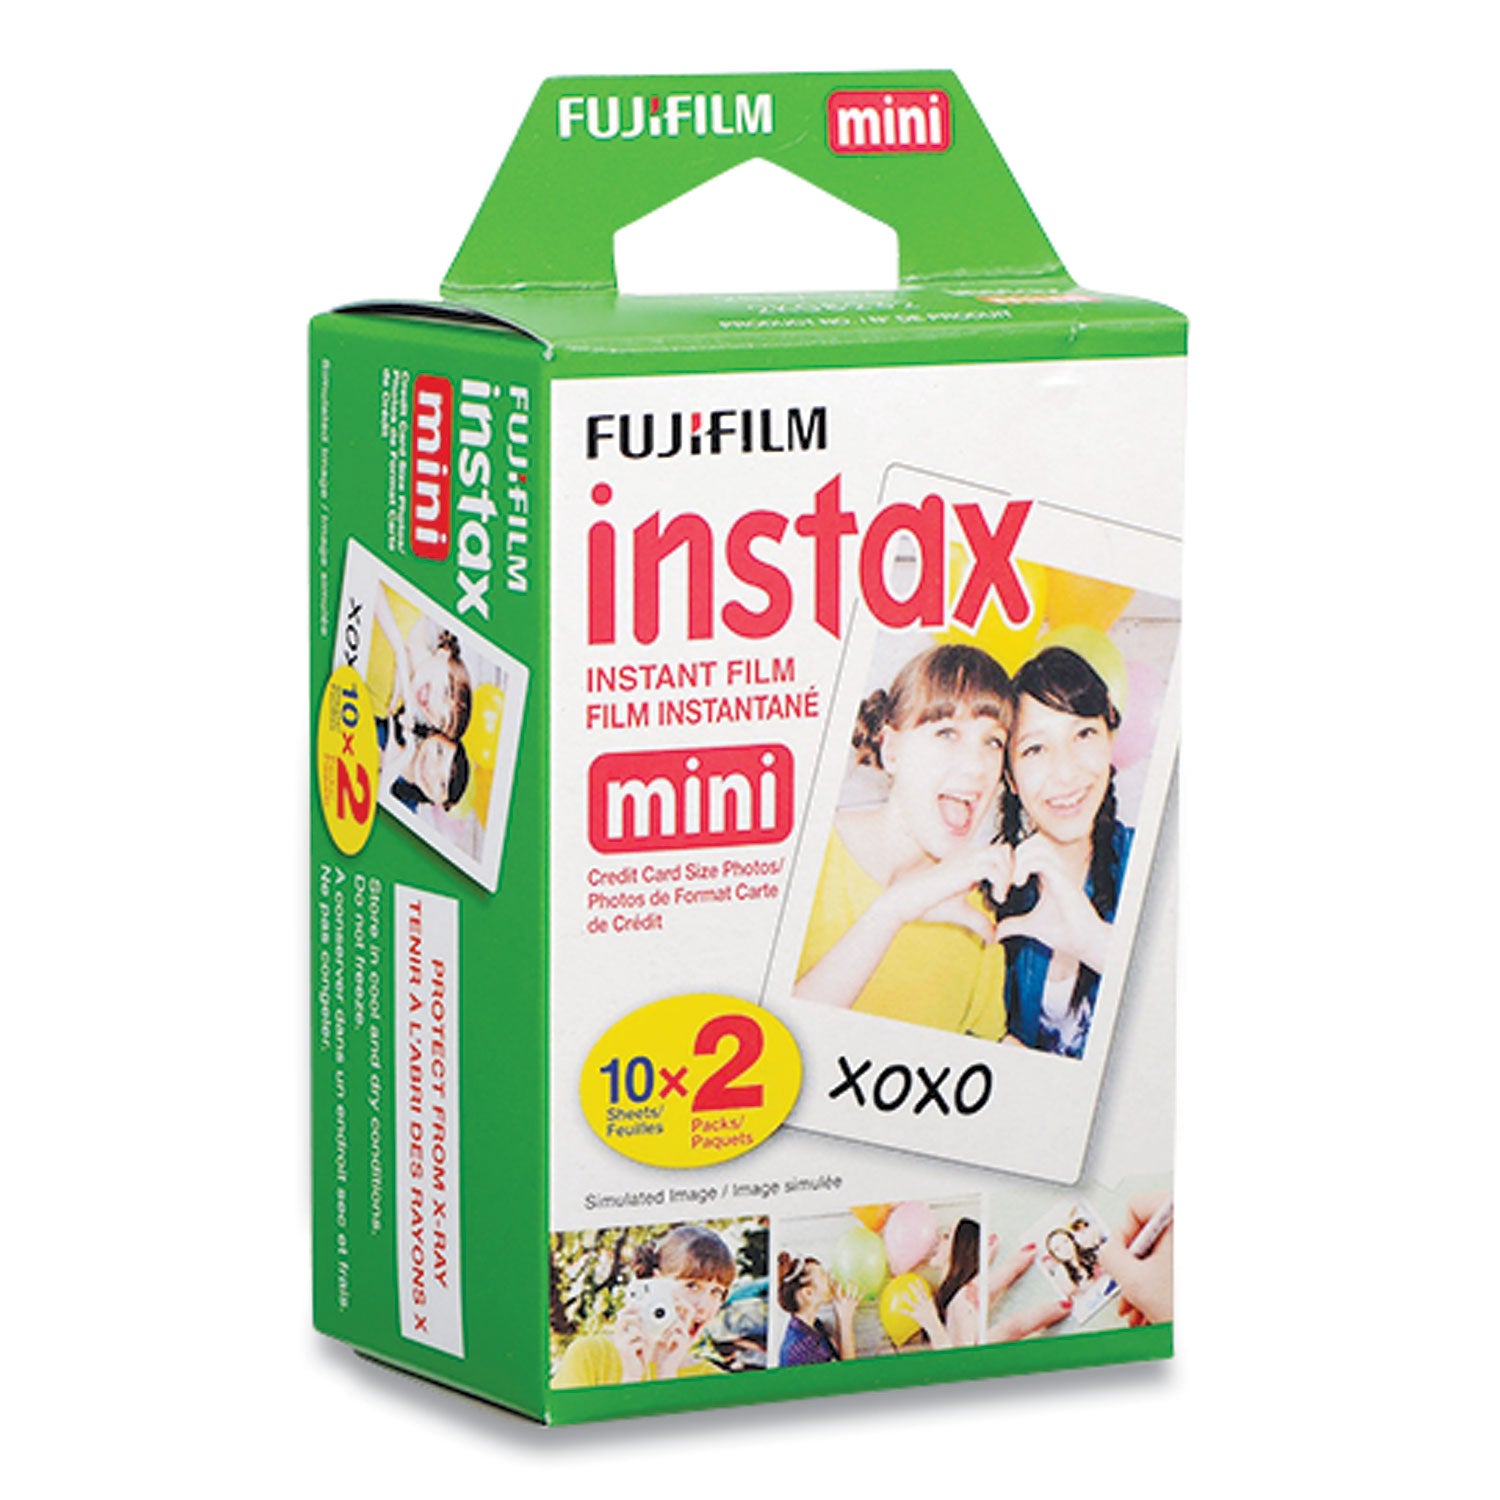 instax-mini-film-800-asa-color-20-sheets_fuj16437396 - 2